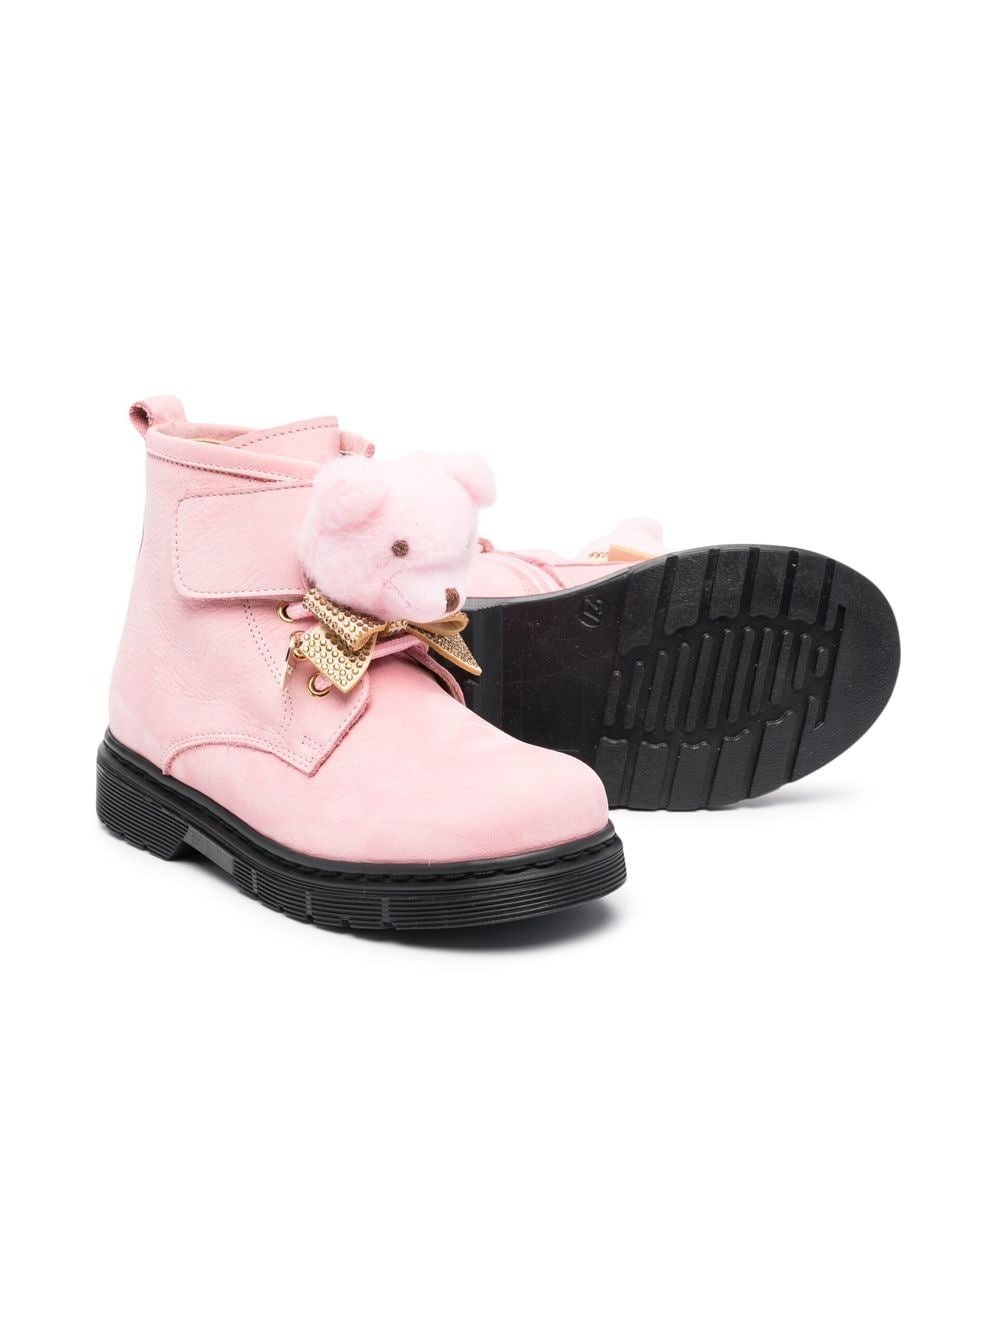 monnalisa pink boots bear